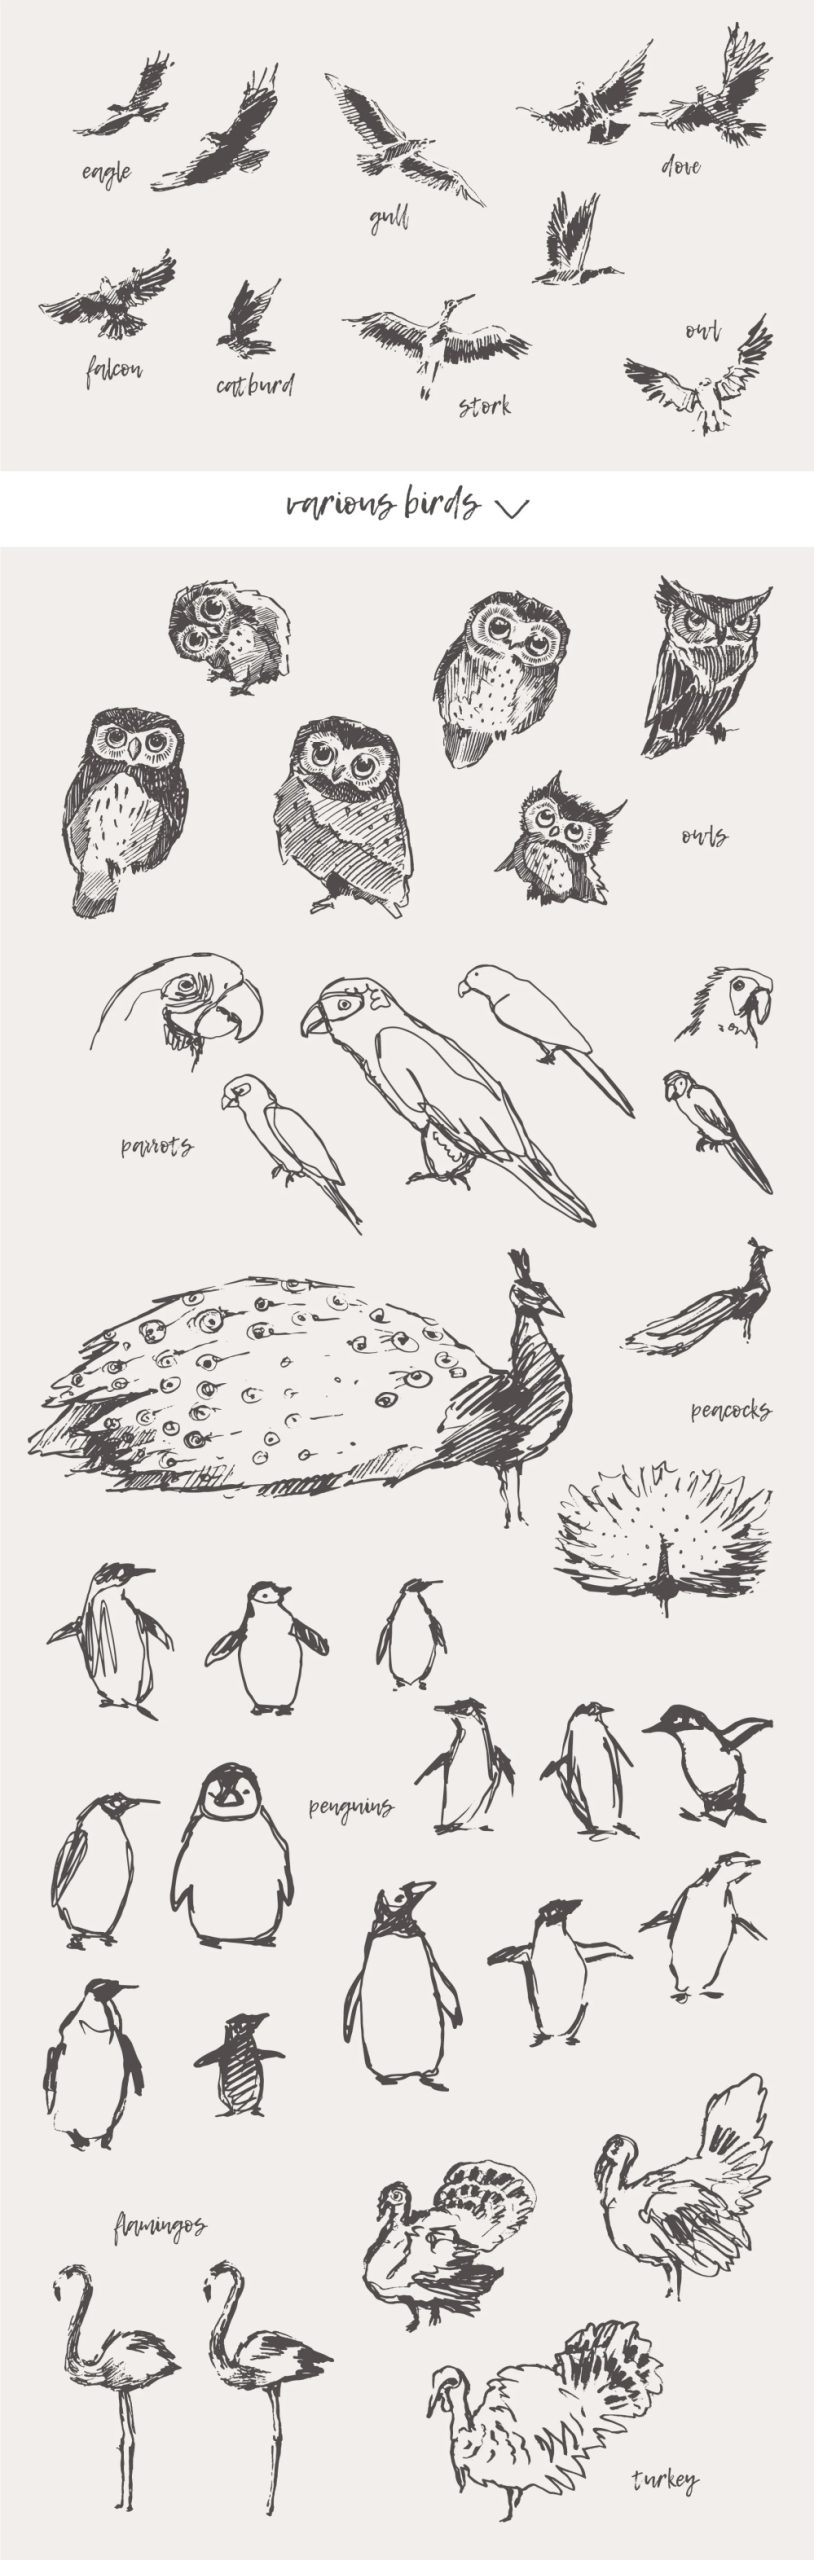 21种森林动物海洋生物插图矢量素材 图片素材 第5张